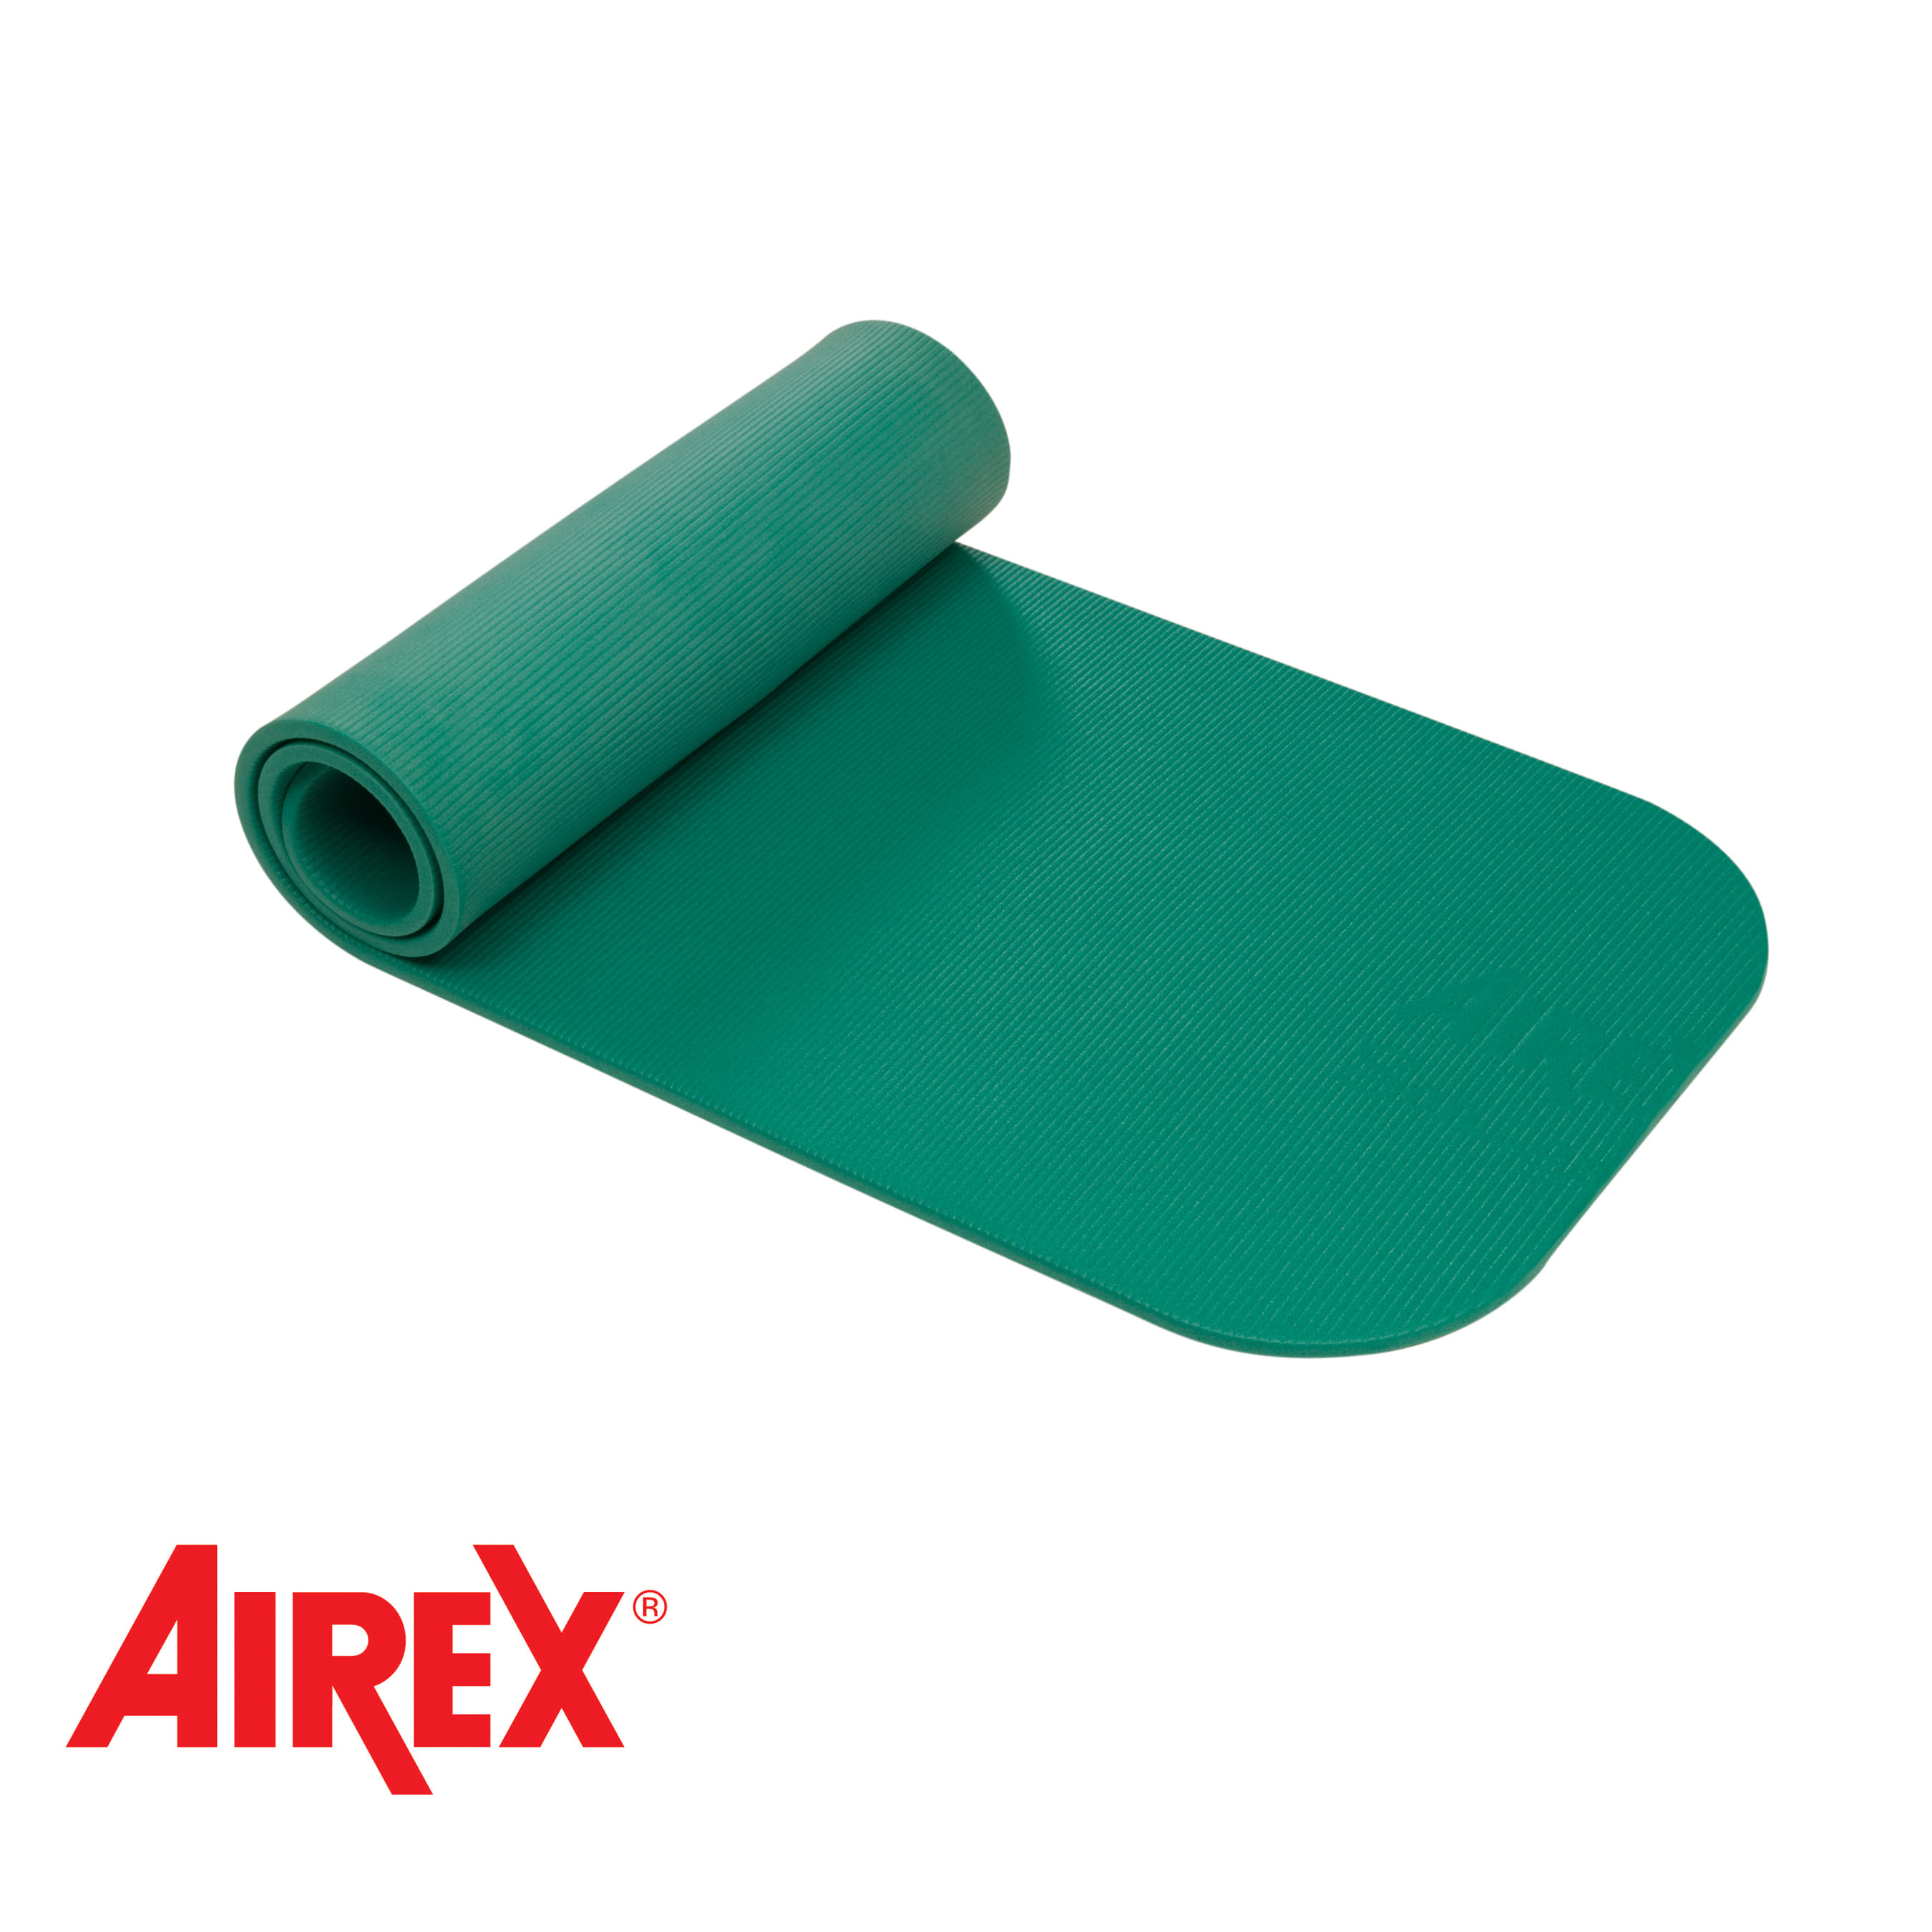 Airex® Coronalla 185 Mat Green